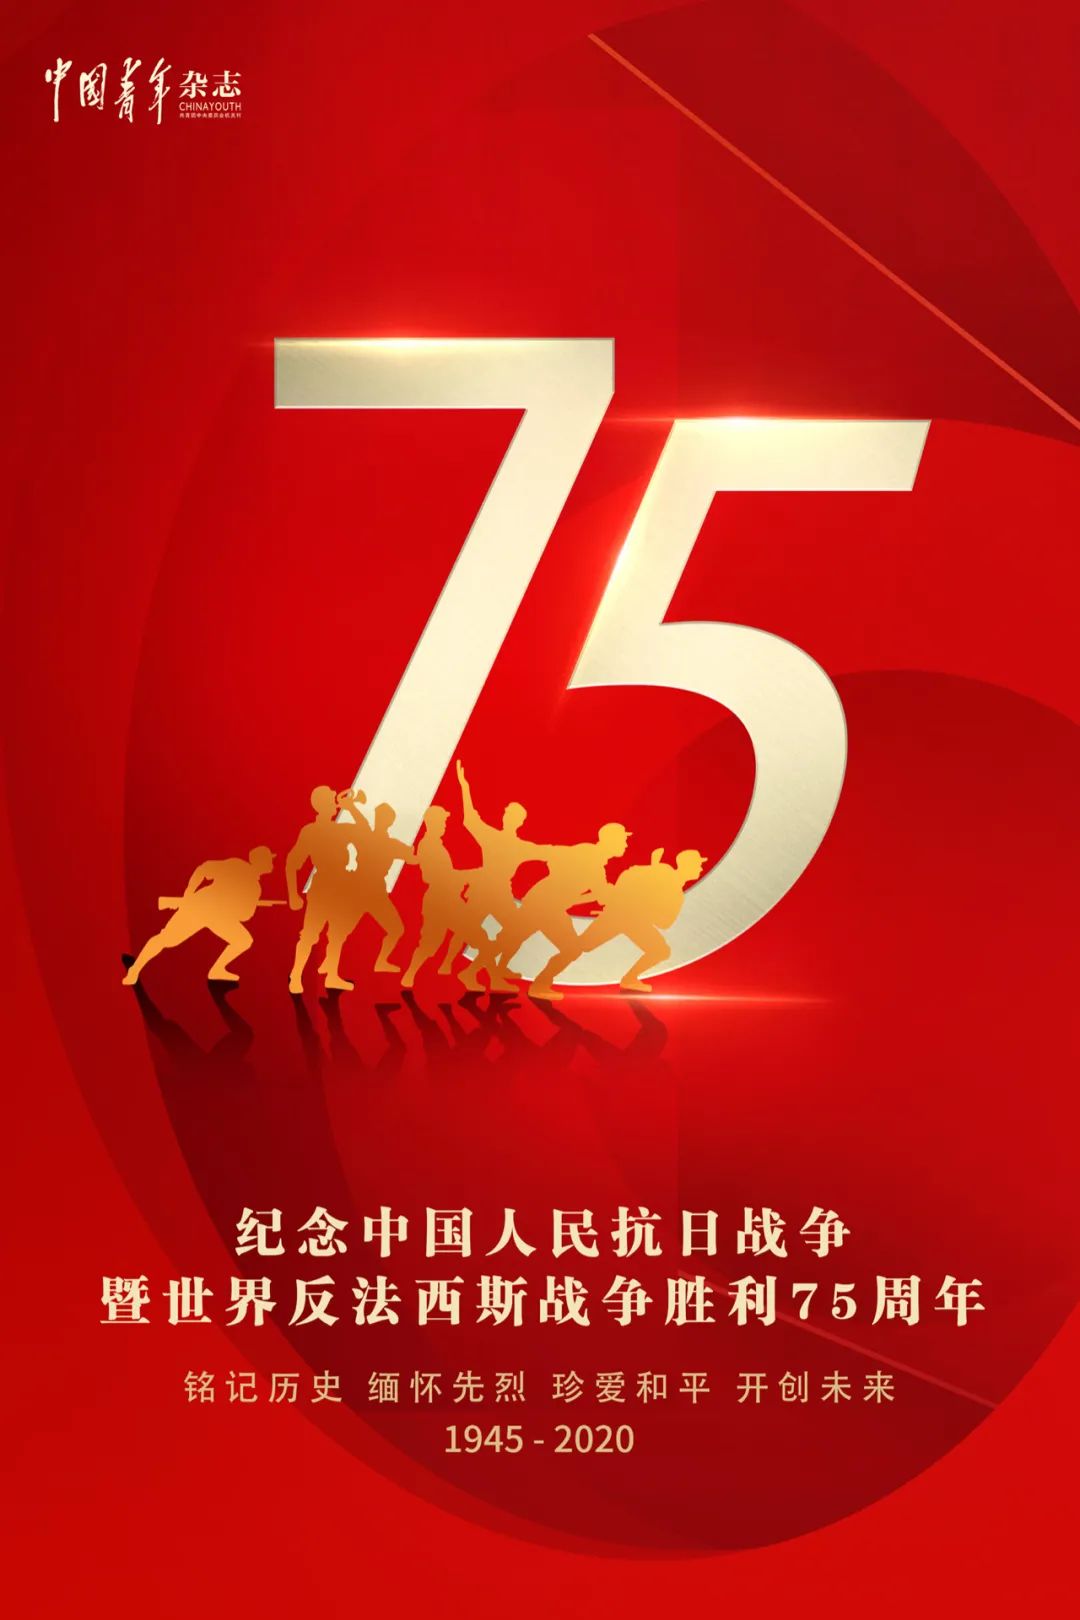 纪念中国人民抗日战争暨世界反法西斯战争胜利75周年